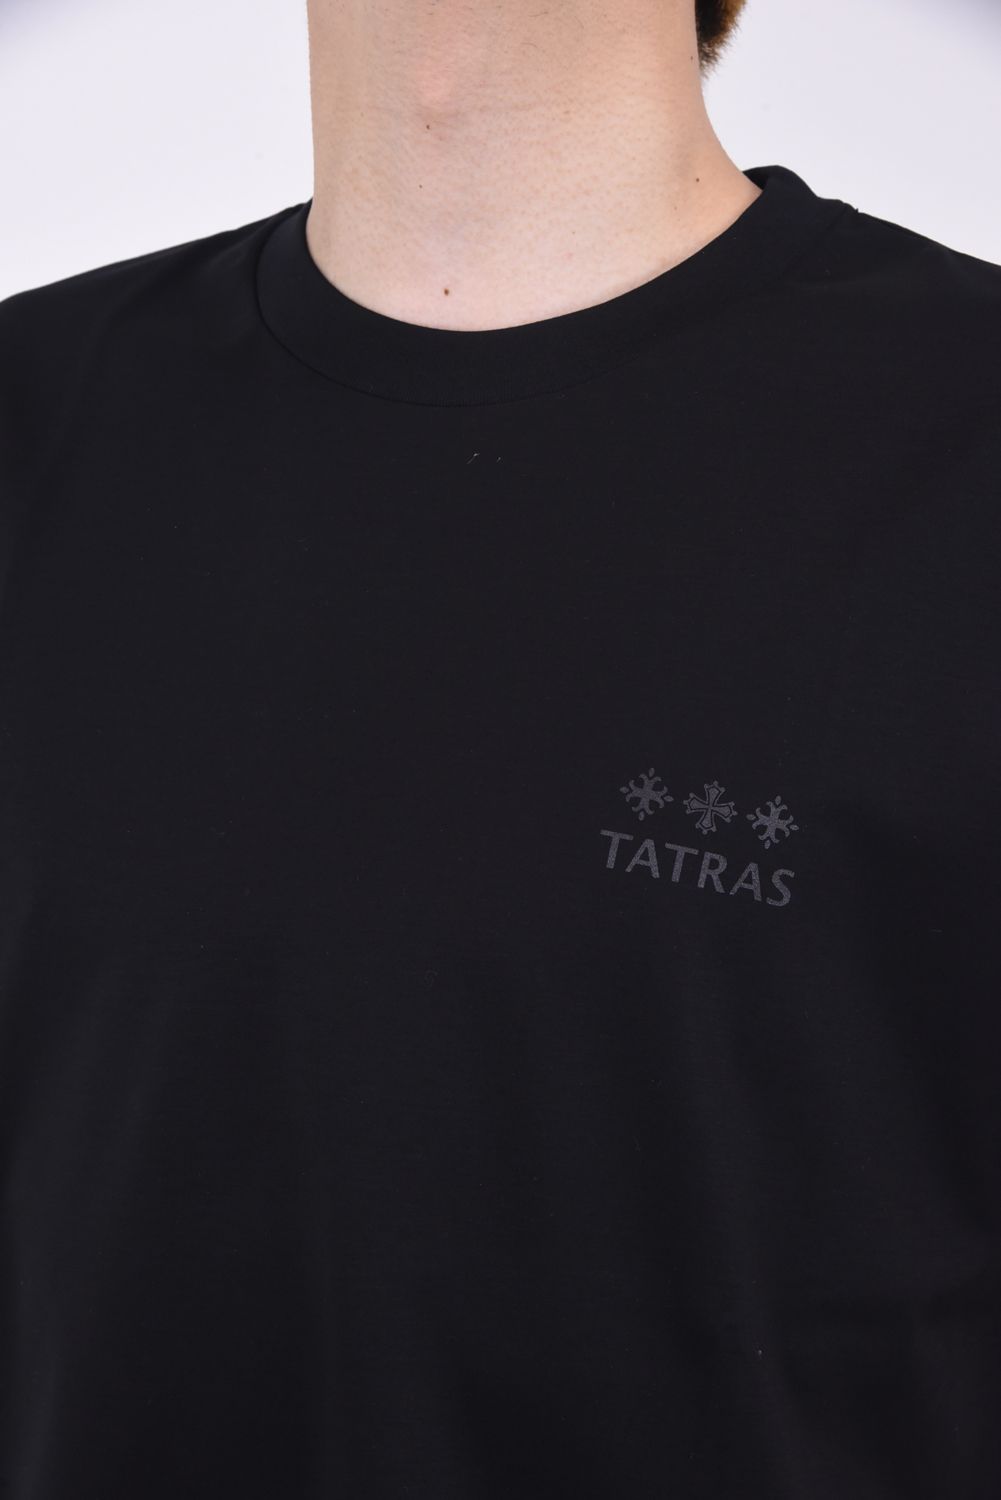 TATRAS - EION (エイオン) / ブランドロゴプリント オーバーサイズ 